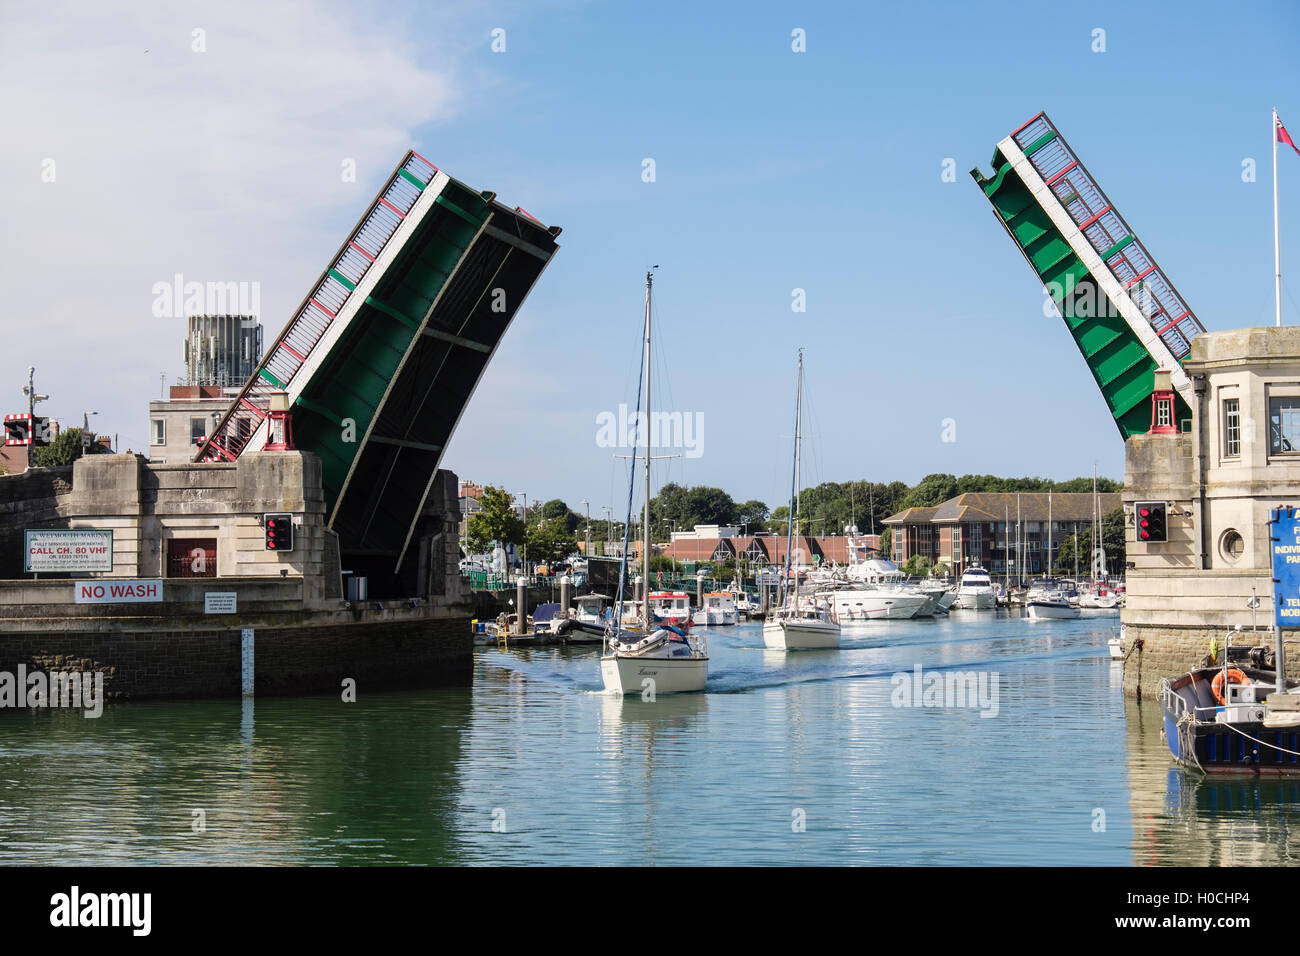 Levage du pont de la vieille ville de permettre aux bateaux à voile hors de la marina en avant-port sur la rivière Wey en 2016. Weymouth Dorset Angleterre Royaume-uni Grande-Bretagne Banque D'Images